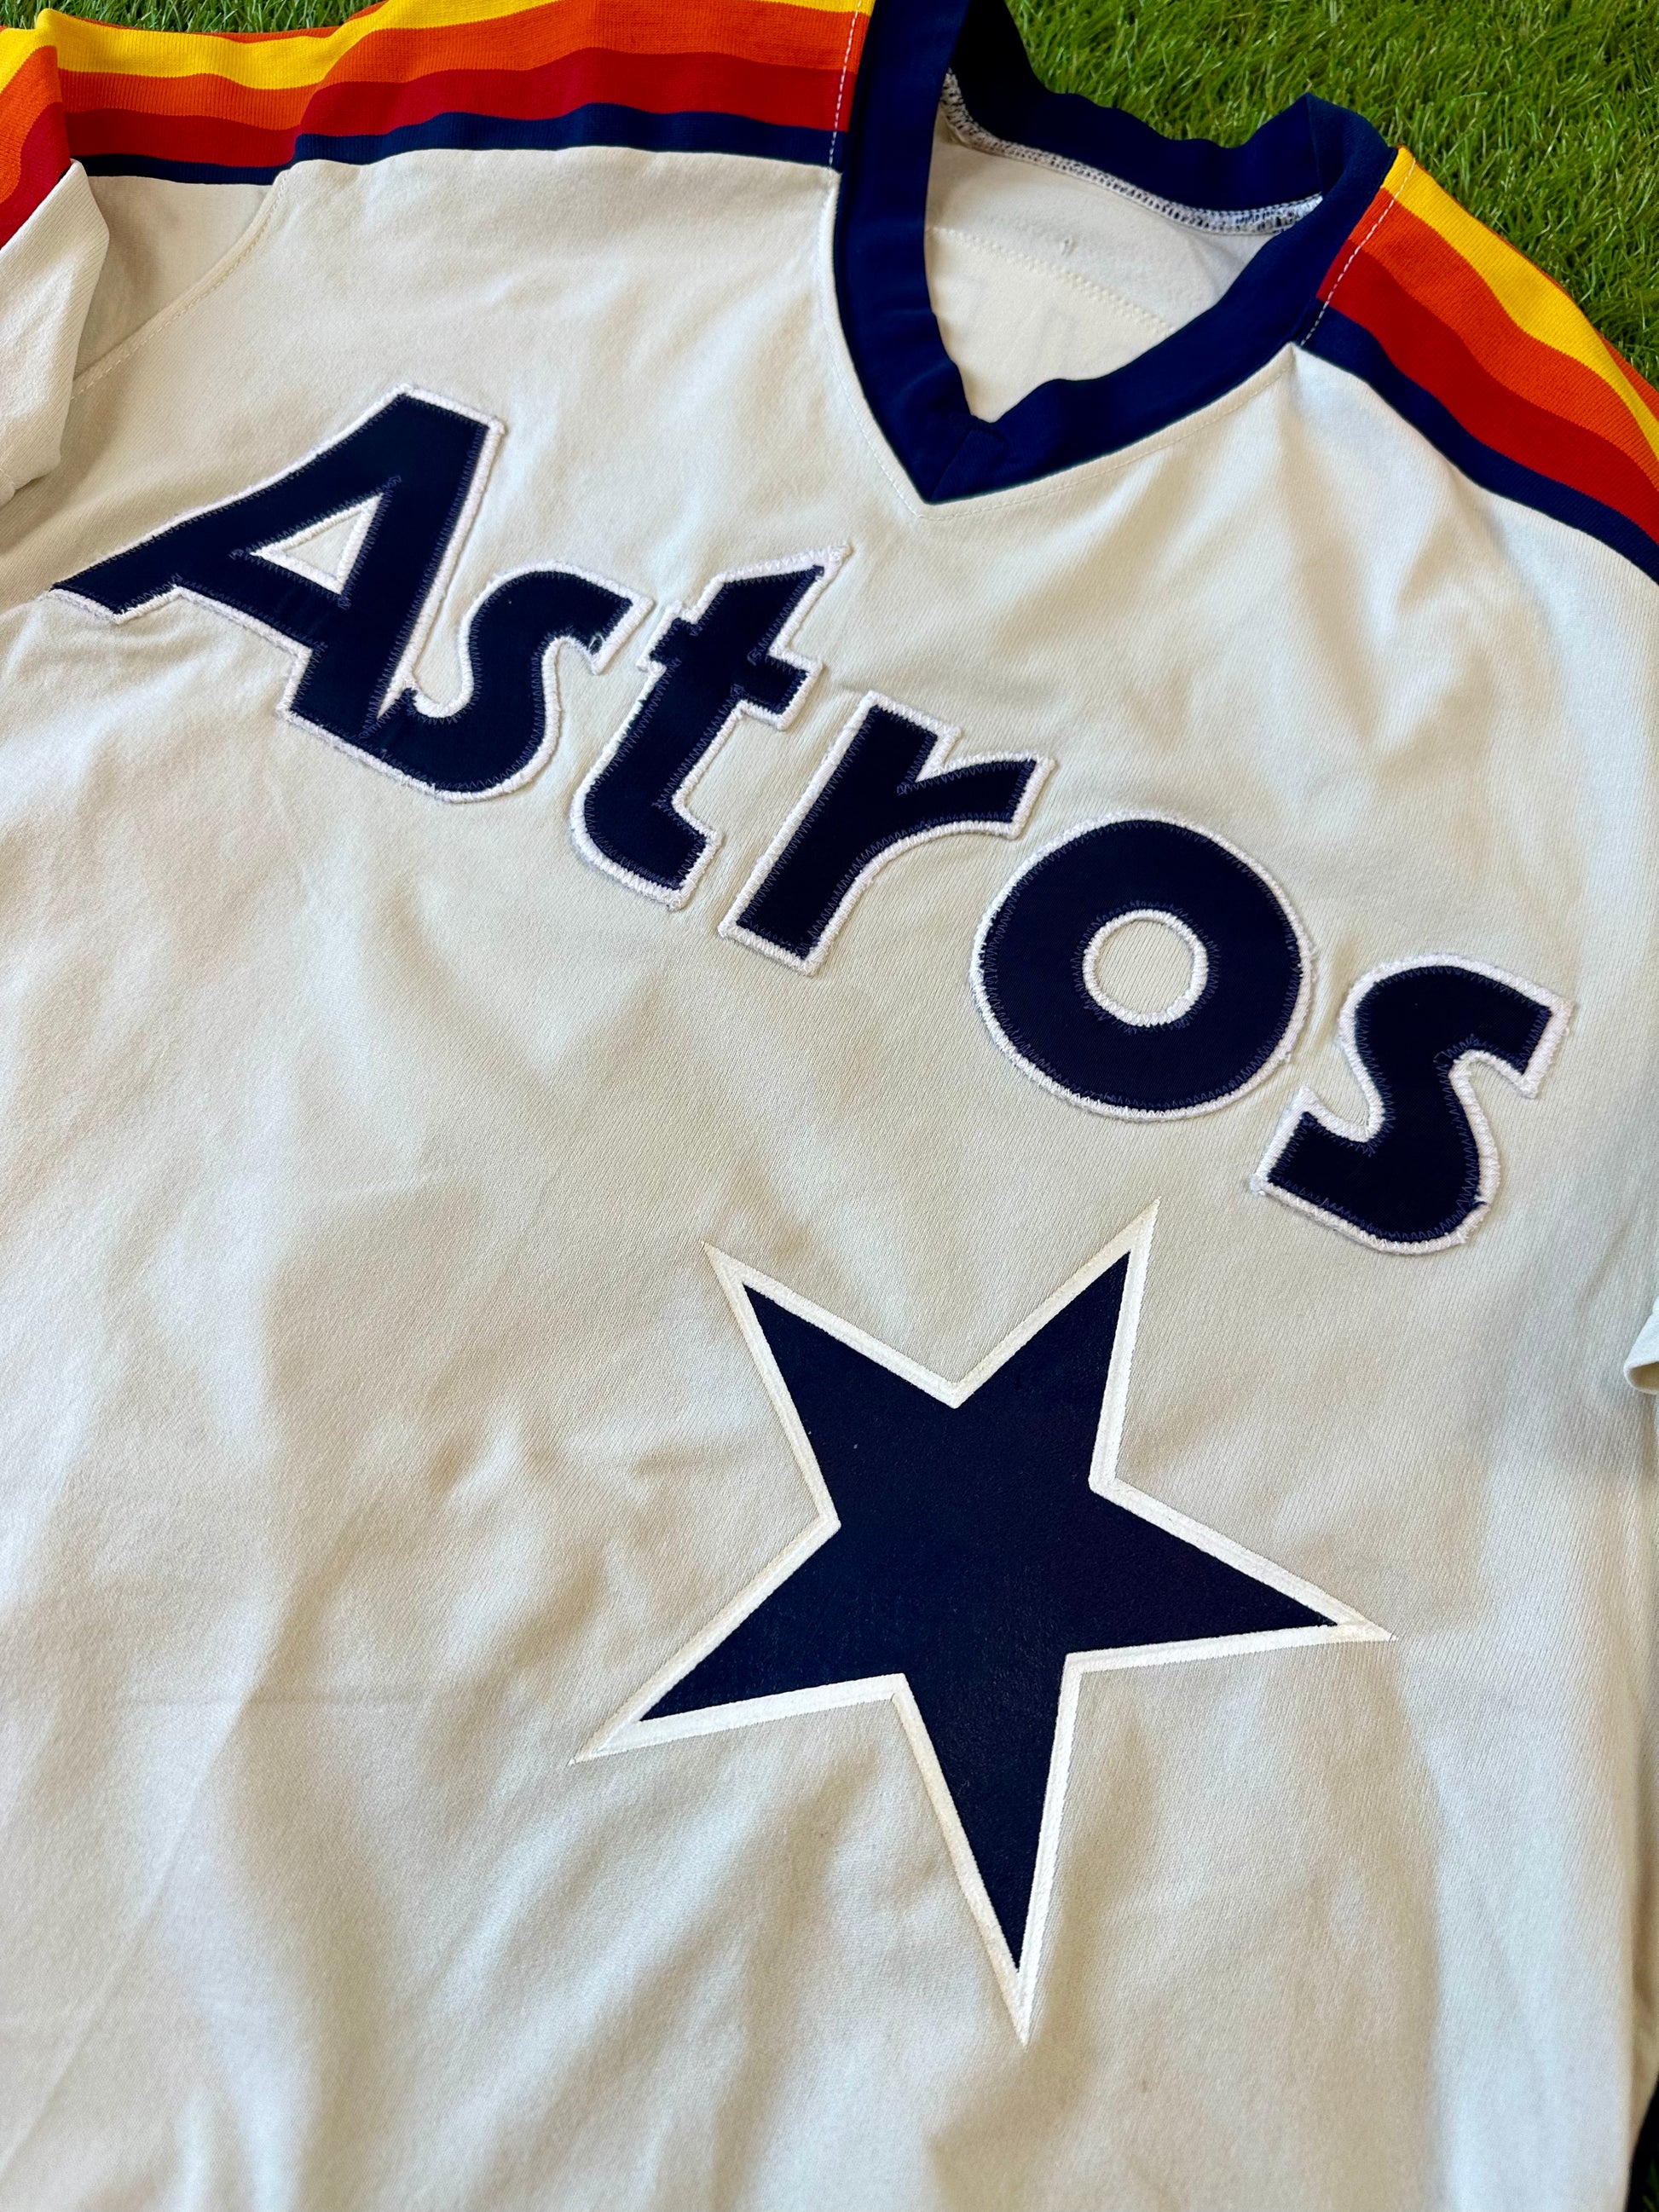 astros uniforms 80s